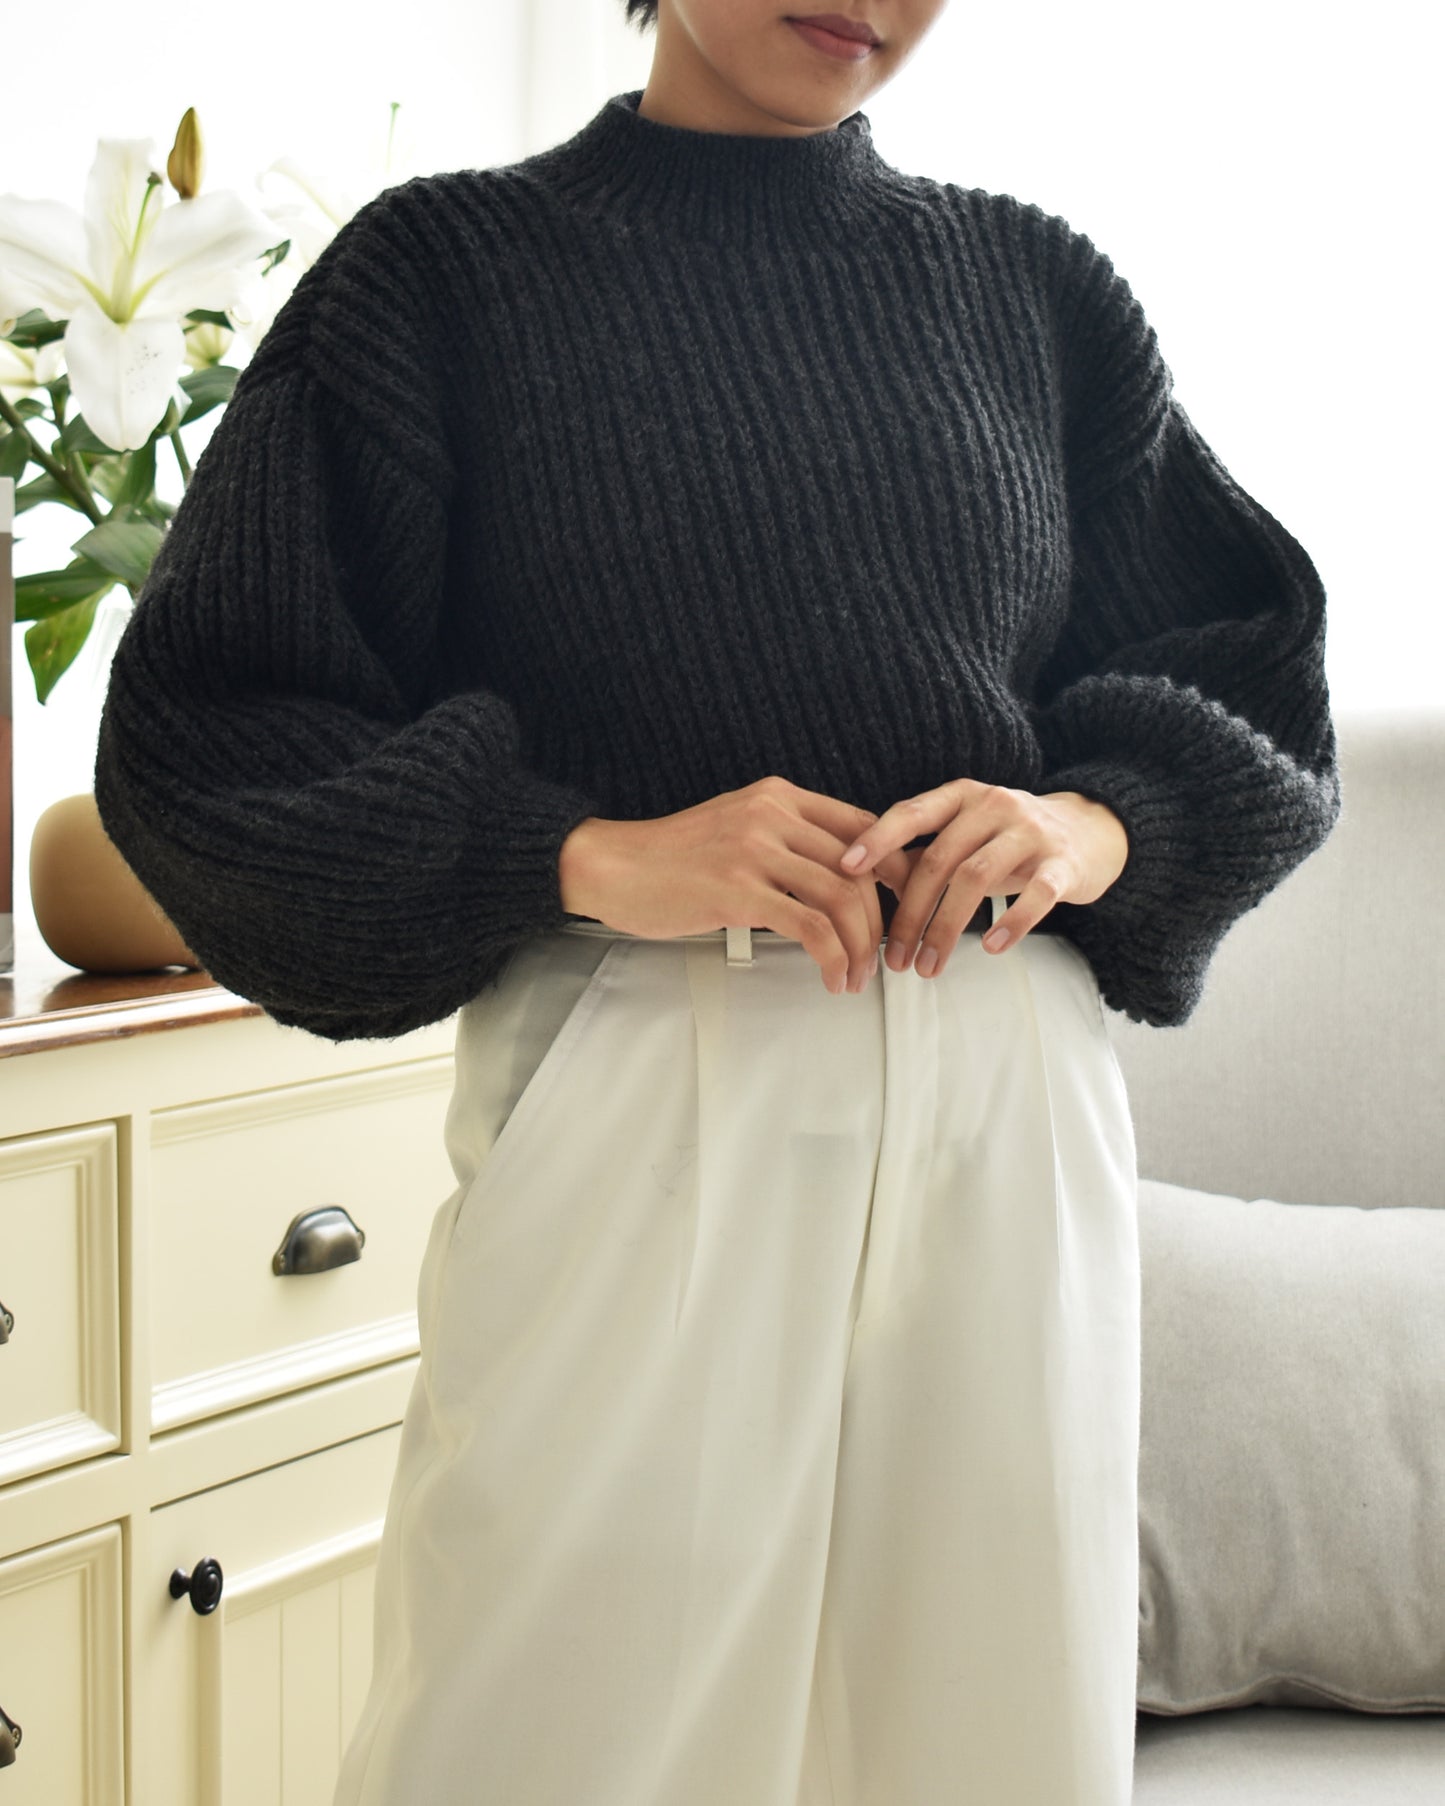 Sweater No.17 | Chunky knitting sweater pattern